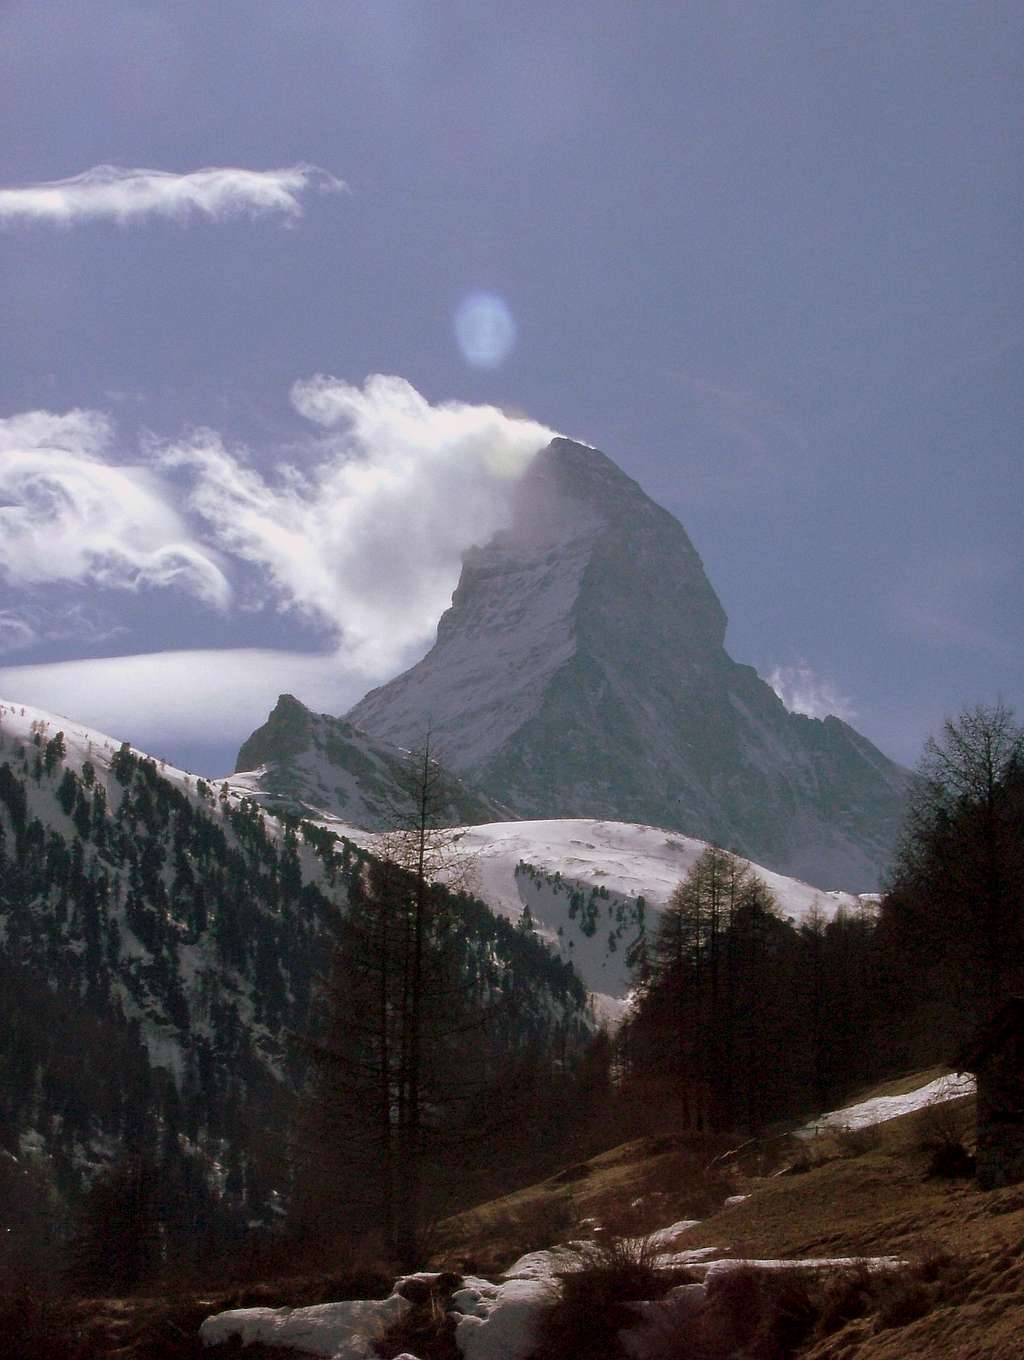 Matterhorn 4,478 meters (14,692 ft)